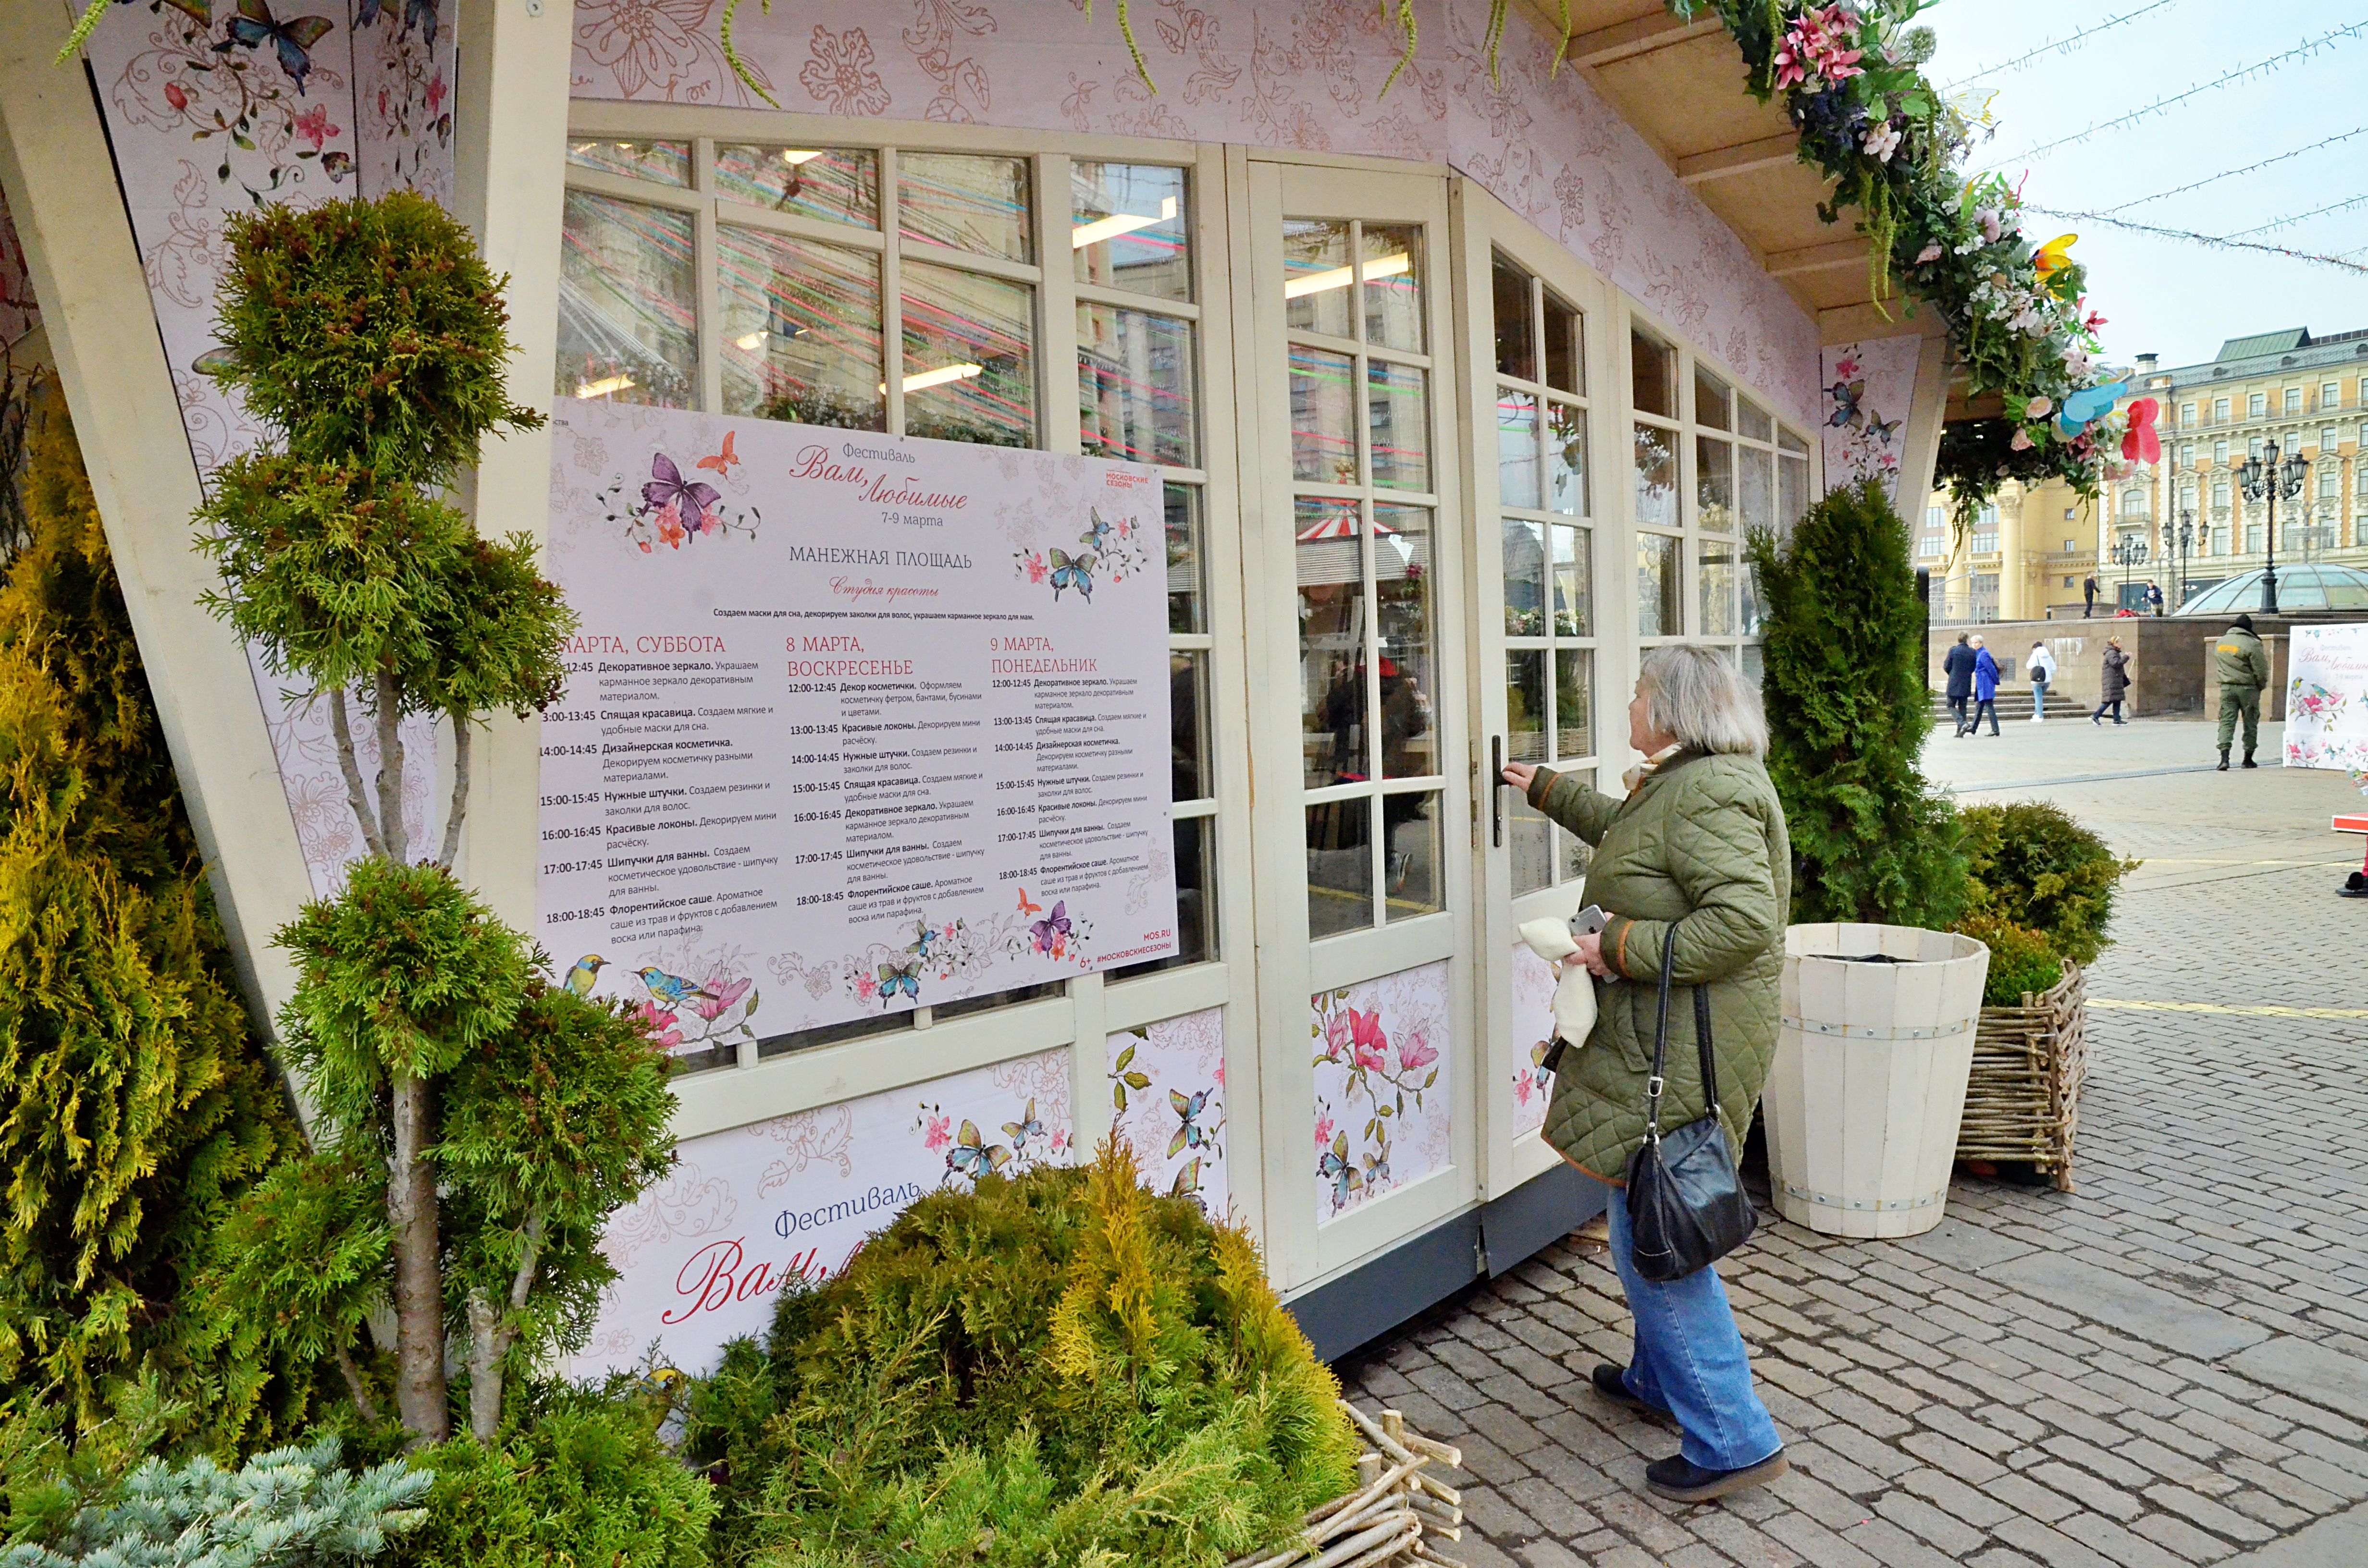 Белые «домики» на фестивале украсили цветочными гирляндами, разноцветными лентами и тематическими баннерами. Фото: Анна Быкова